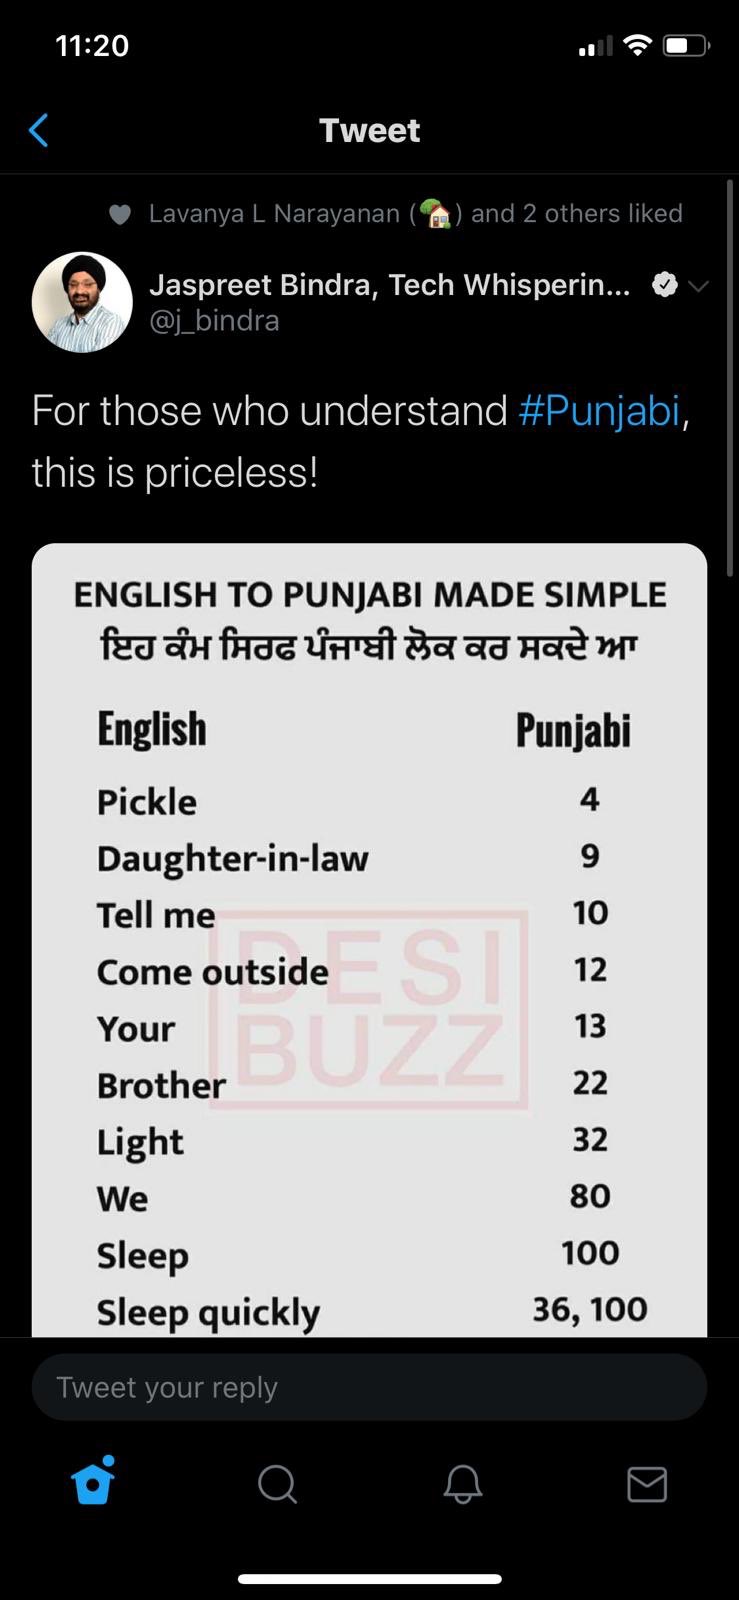 Basic English Words In Punjabi Version